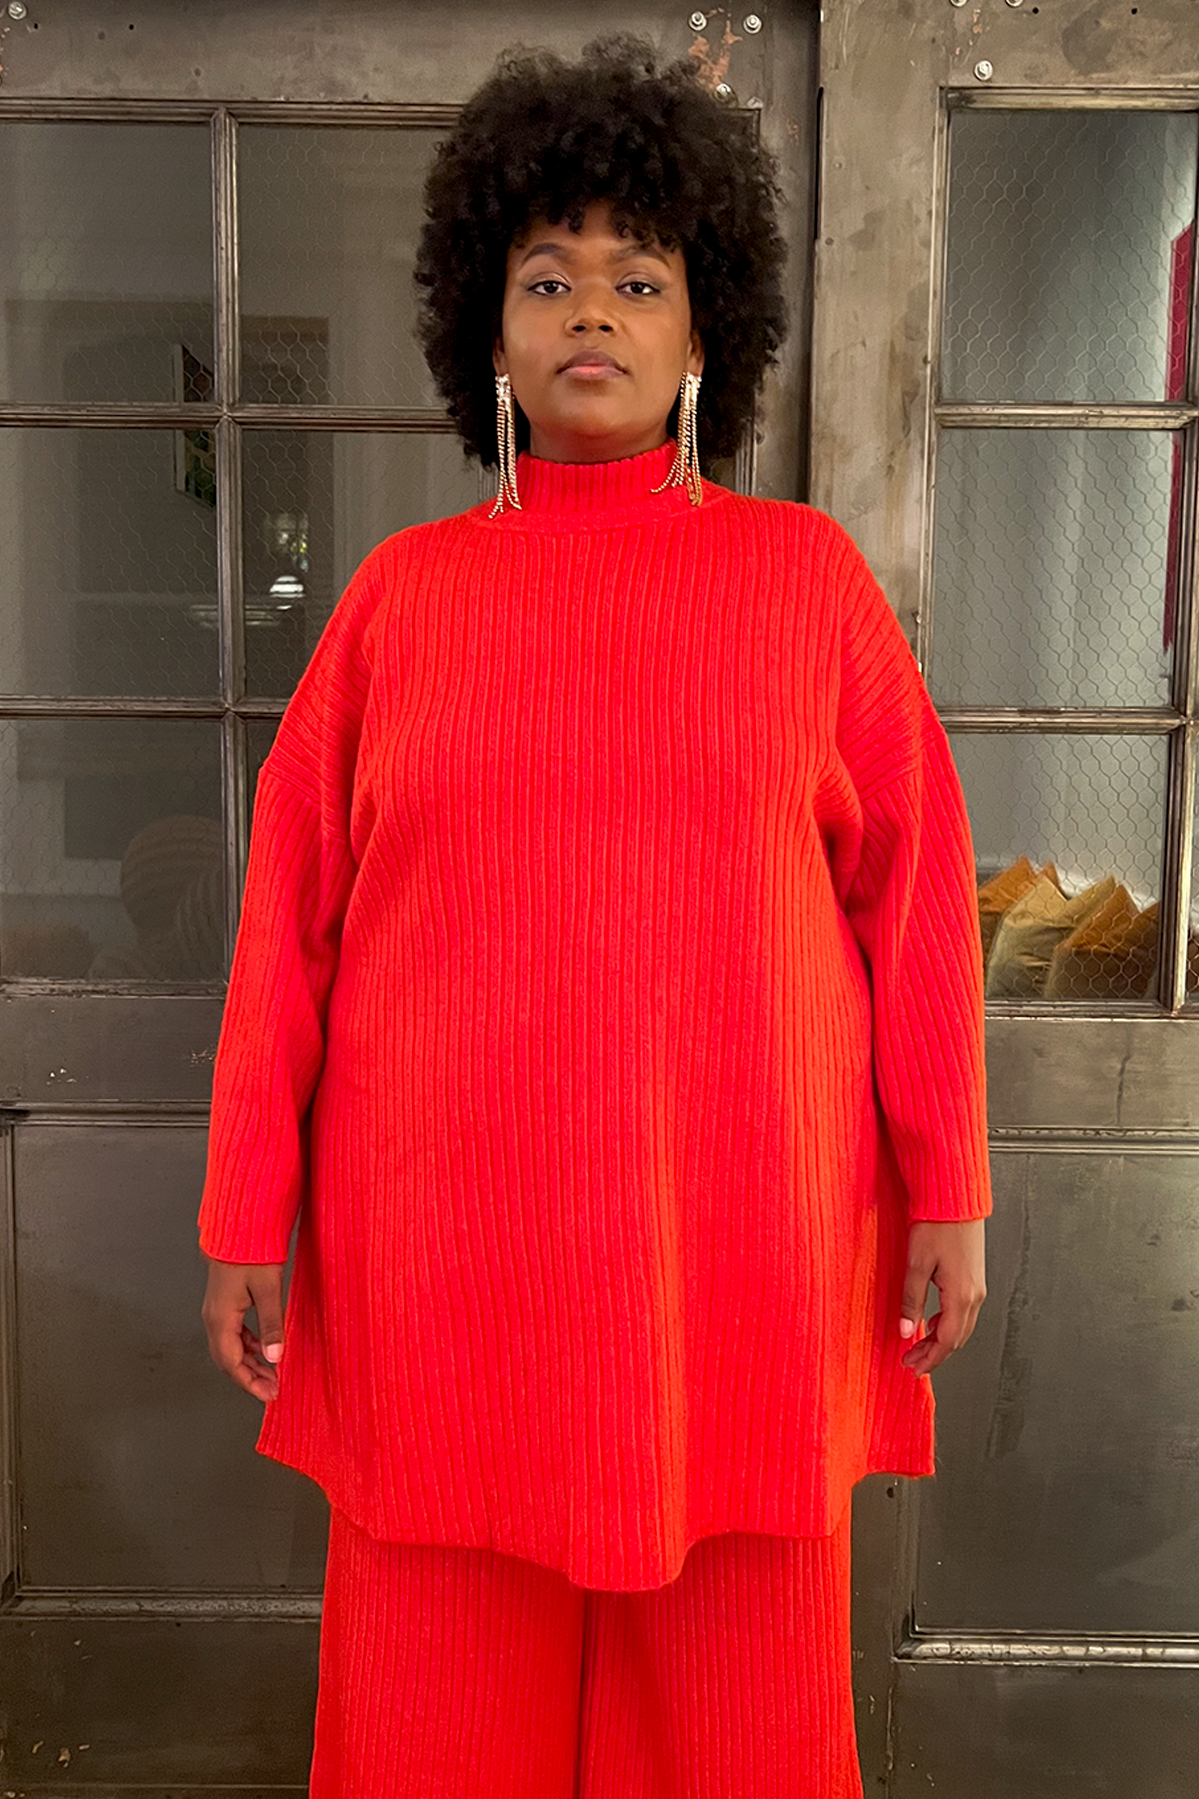 Rene Sweater Dress - Cherry Tomato